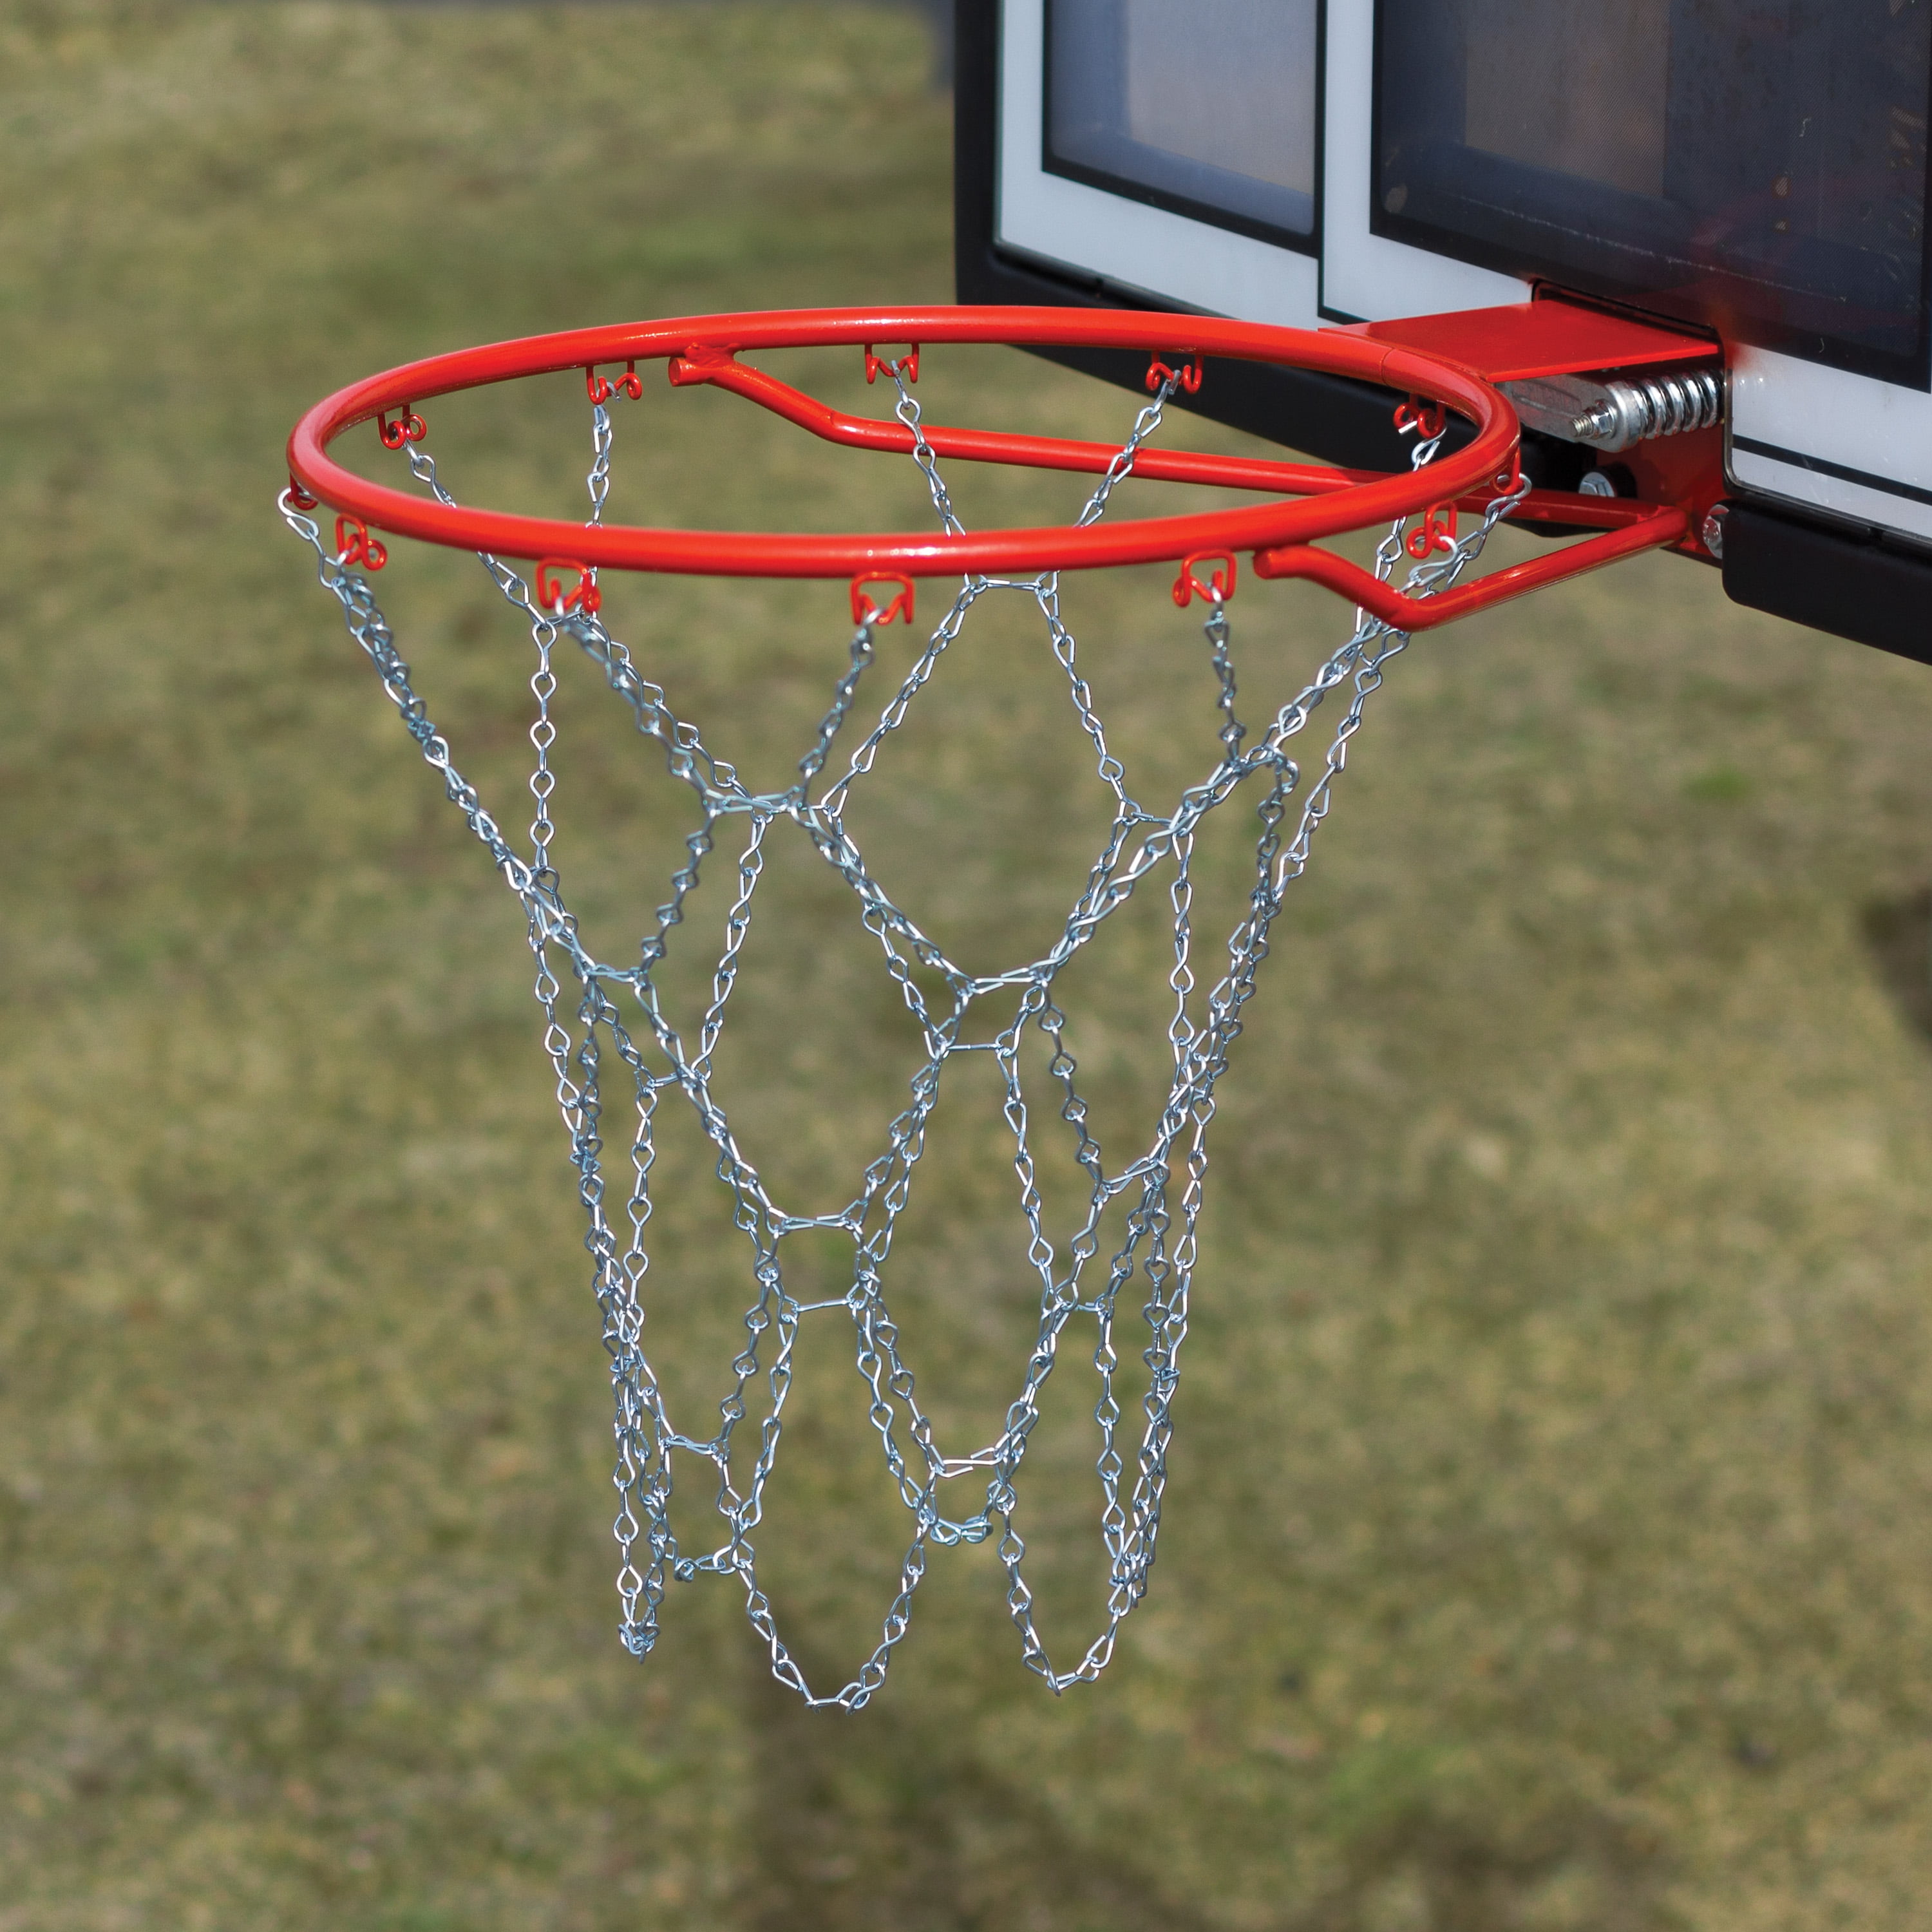 In/Outdoor Basketball Net Rim Heavy Duty Galvanized Steel Chain Hoops Rust Proof 